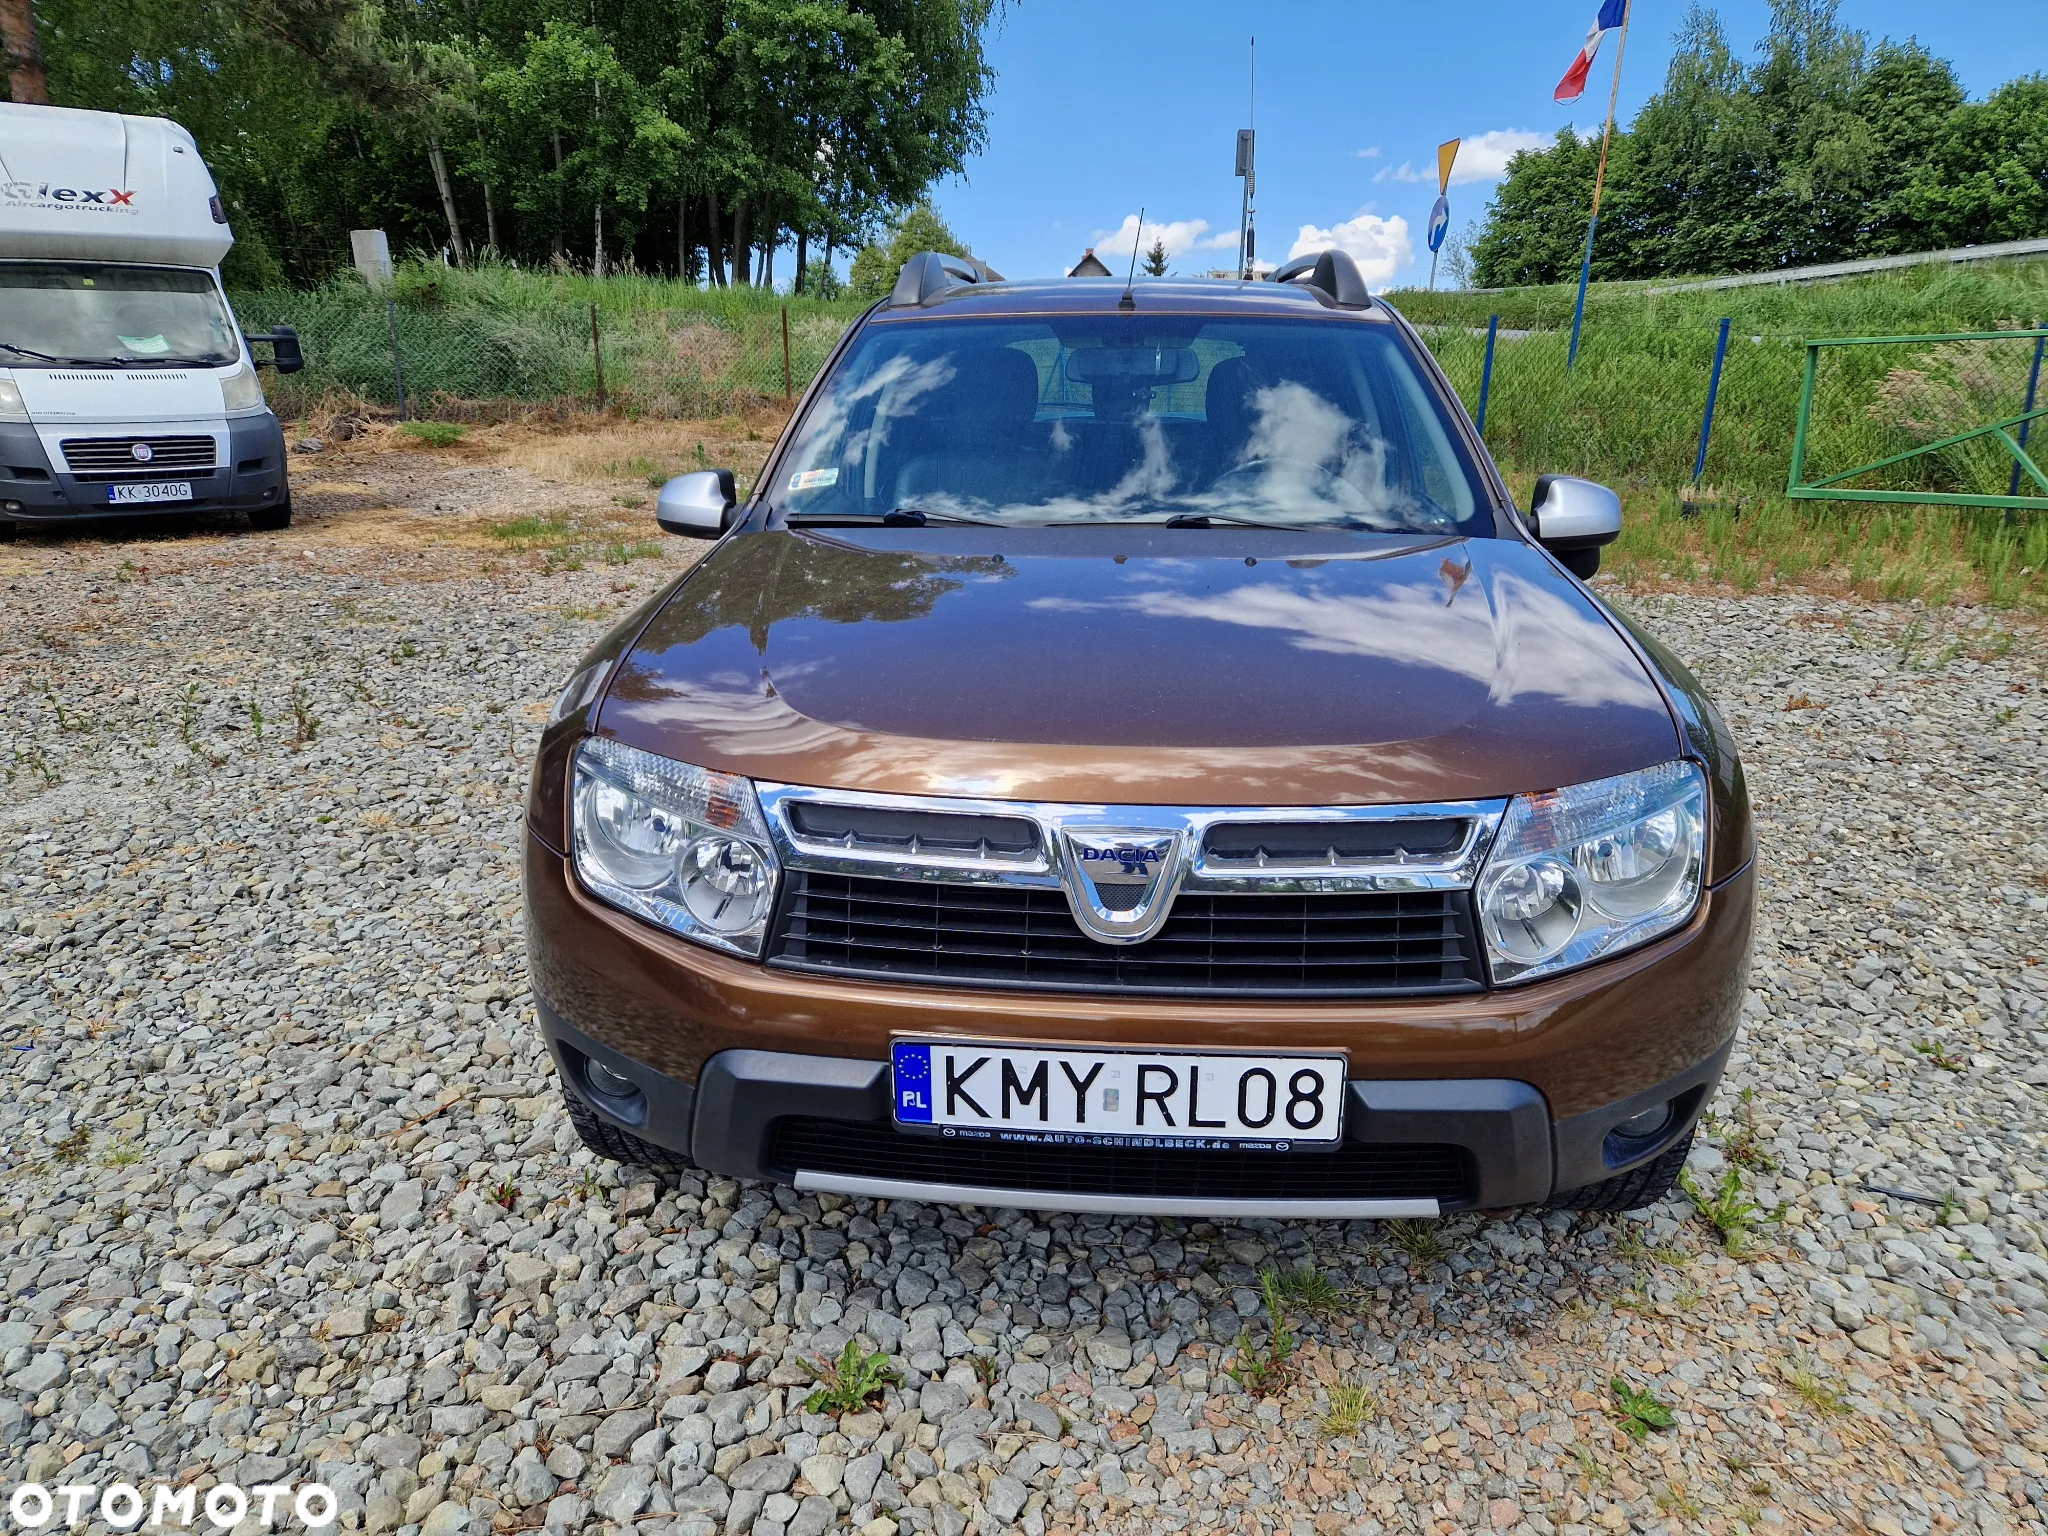 Dacia Duster 1.6 16V 4x2 Prestige - 5